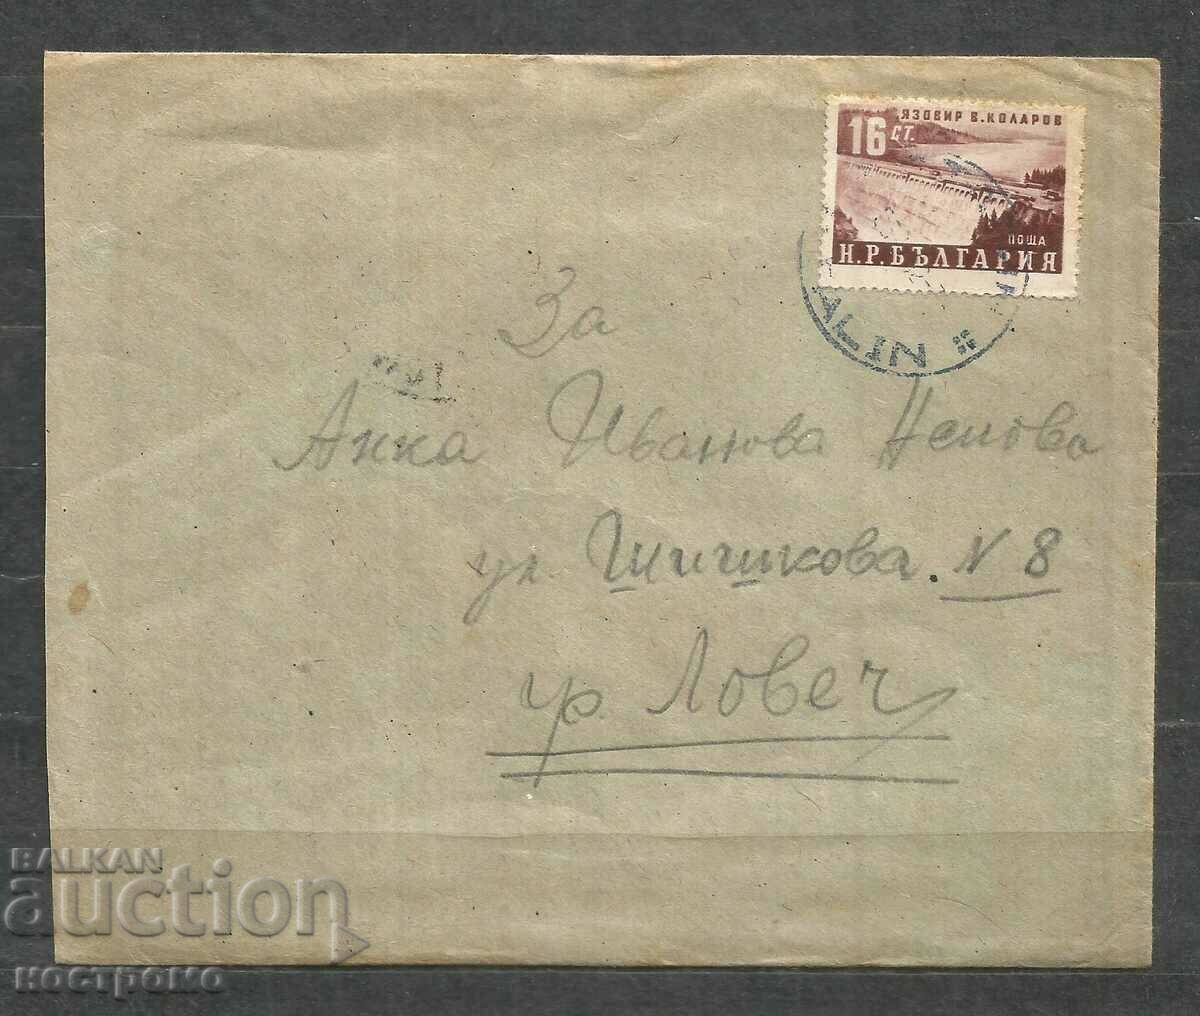 Traveled old letter envelope - A 696